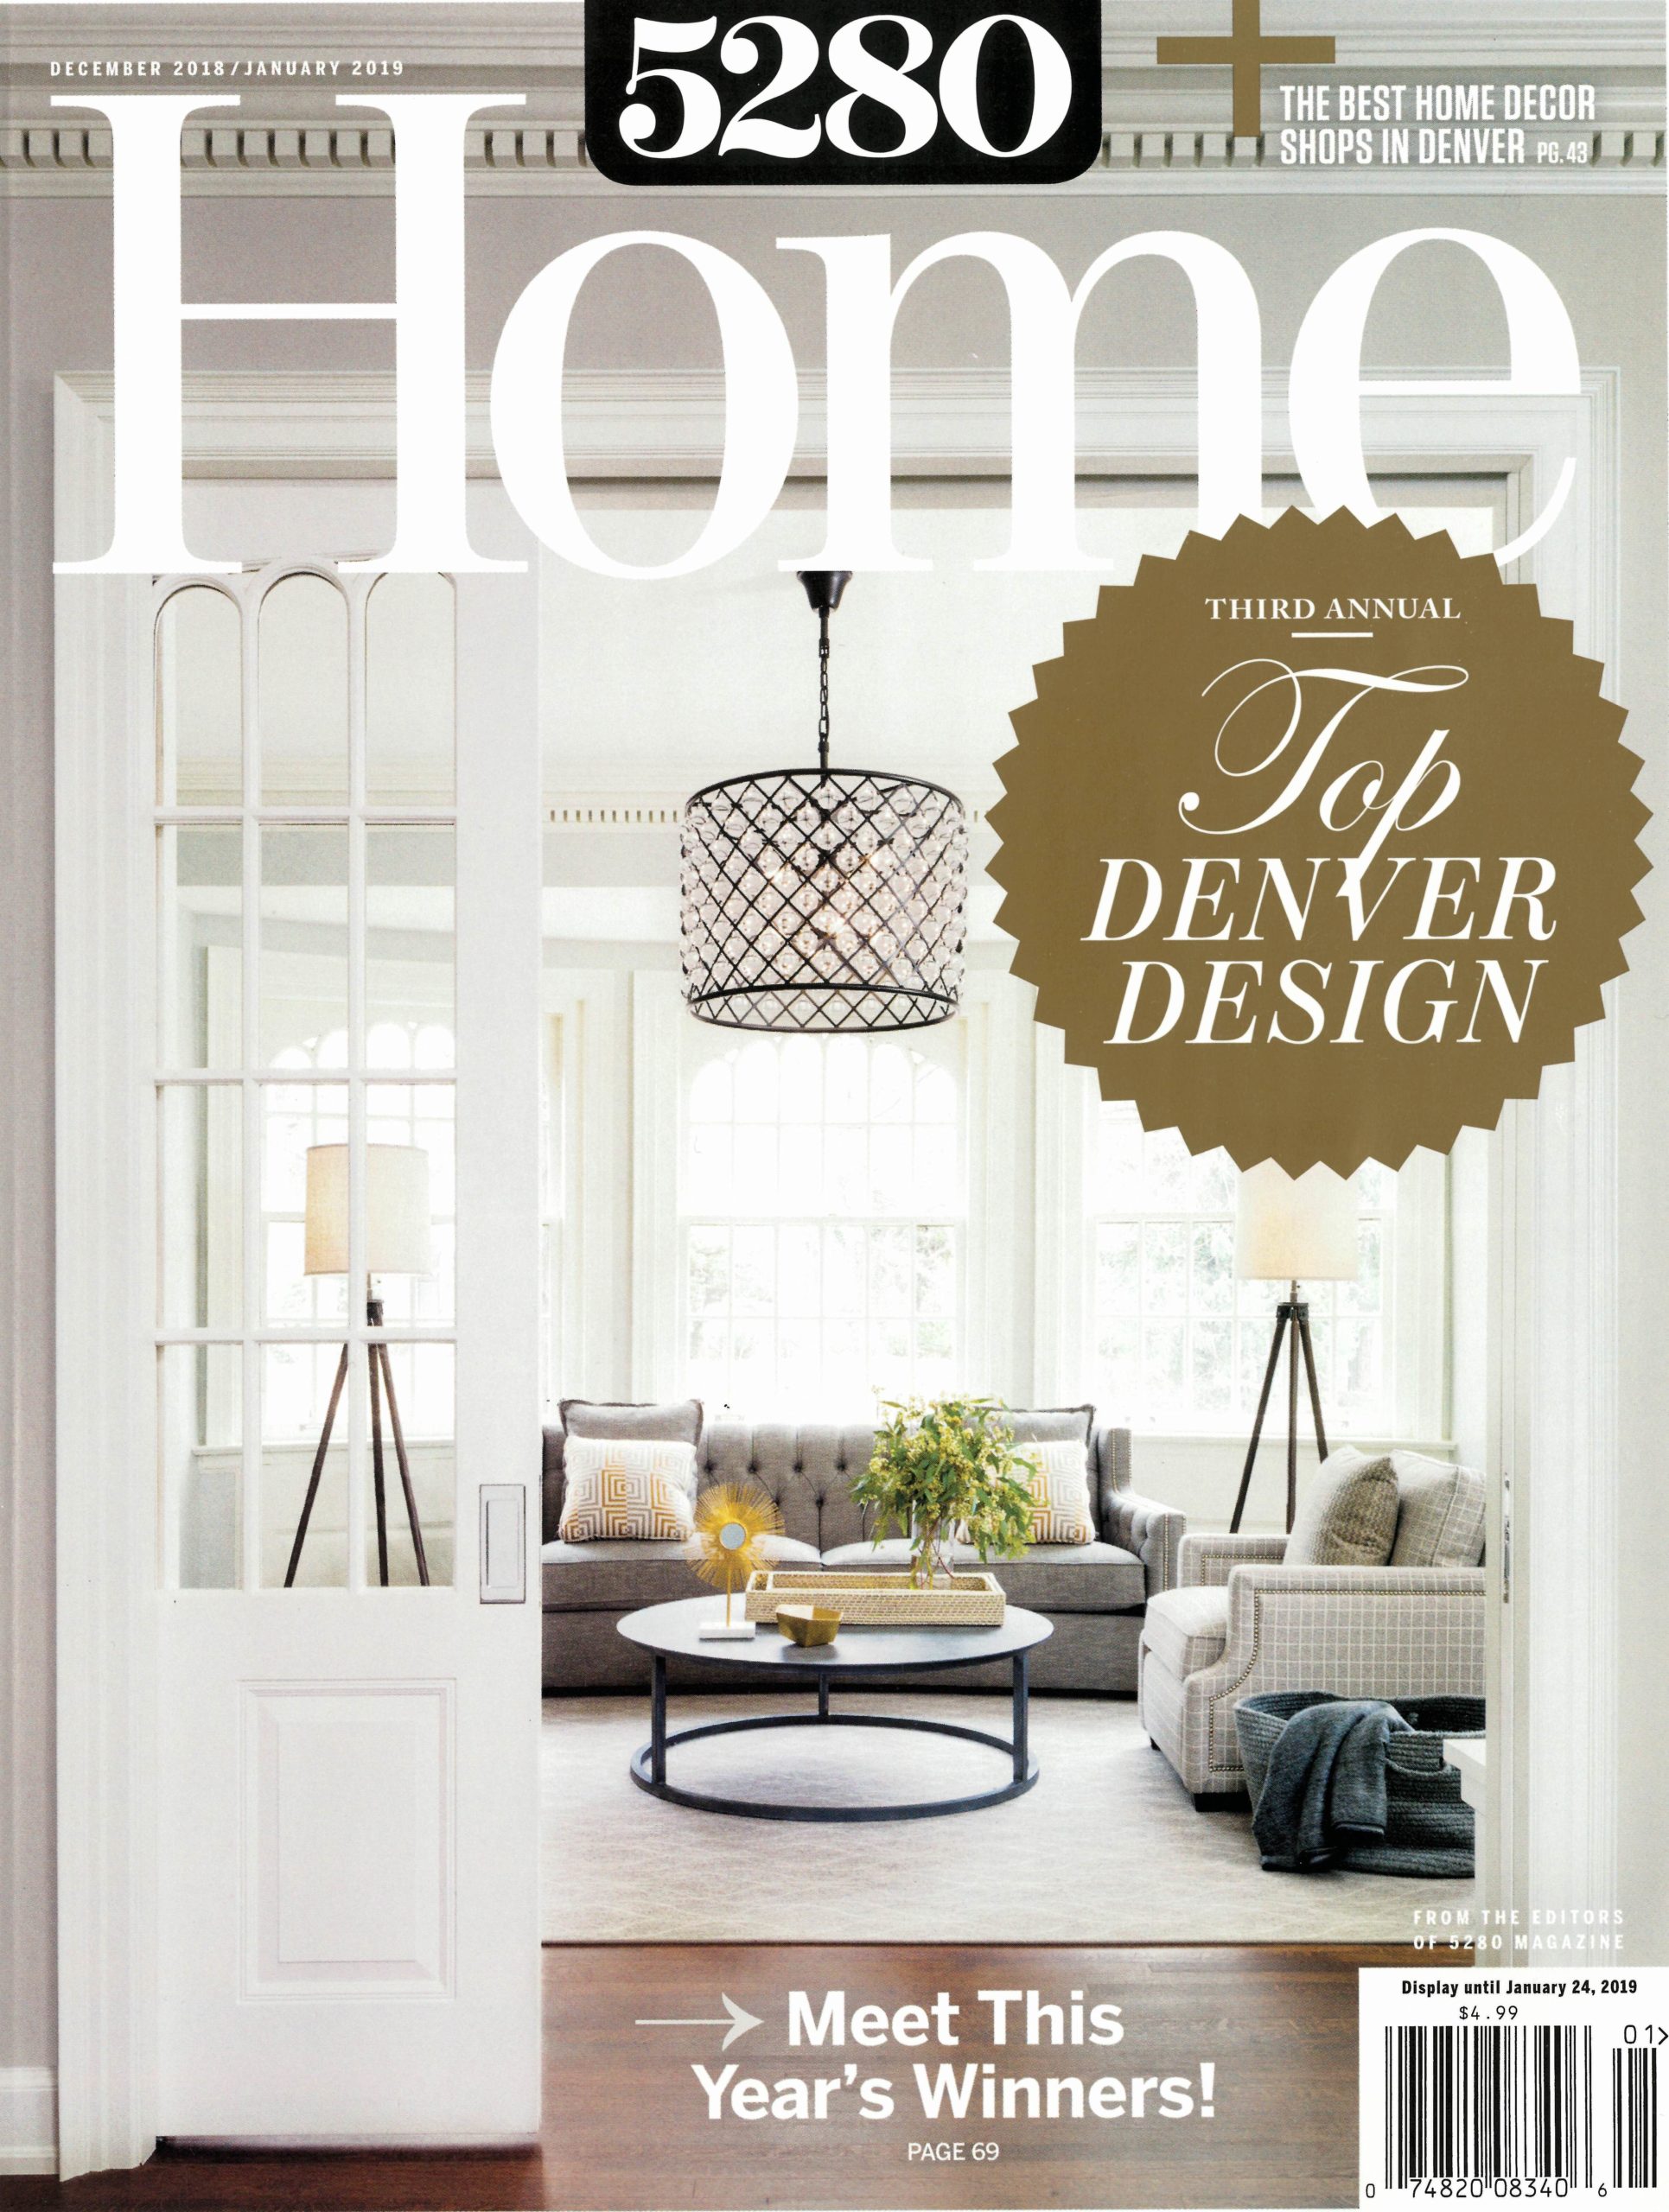 5280 Home magazine press for Renée del Gaudio Architecture.